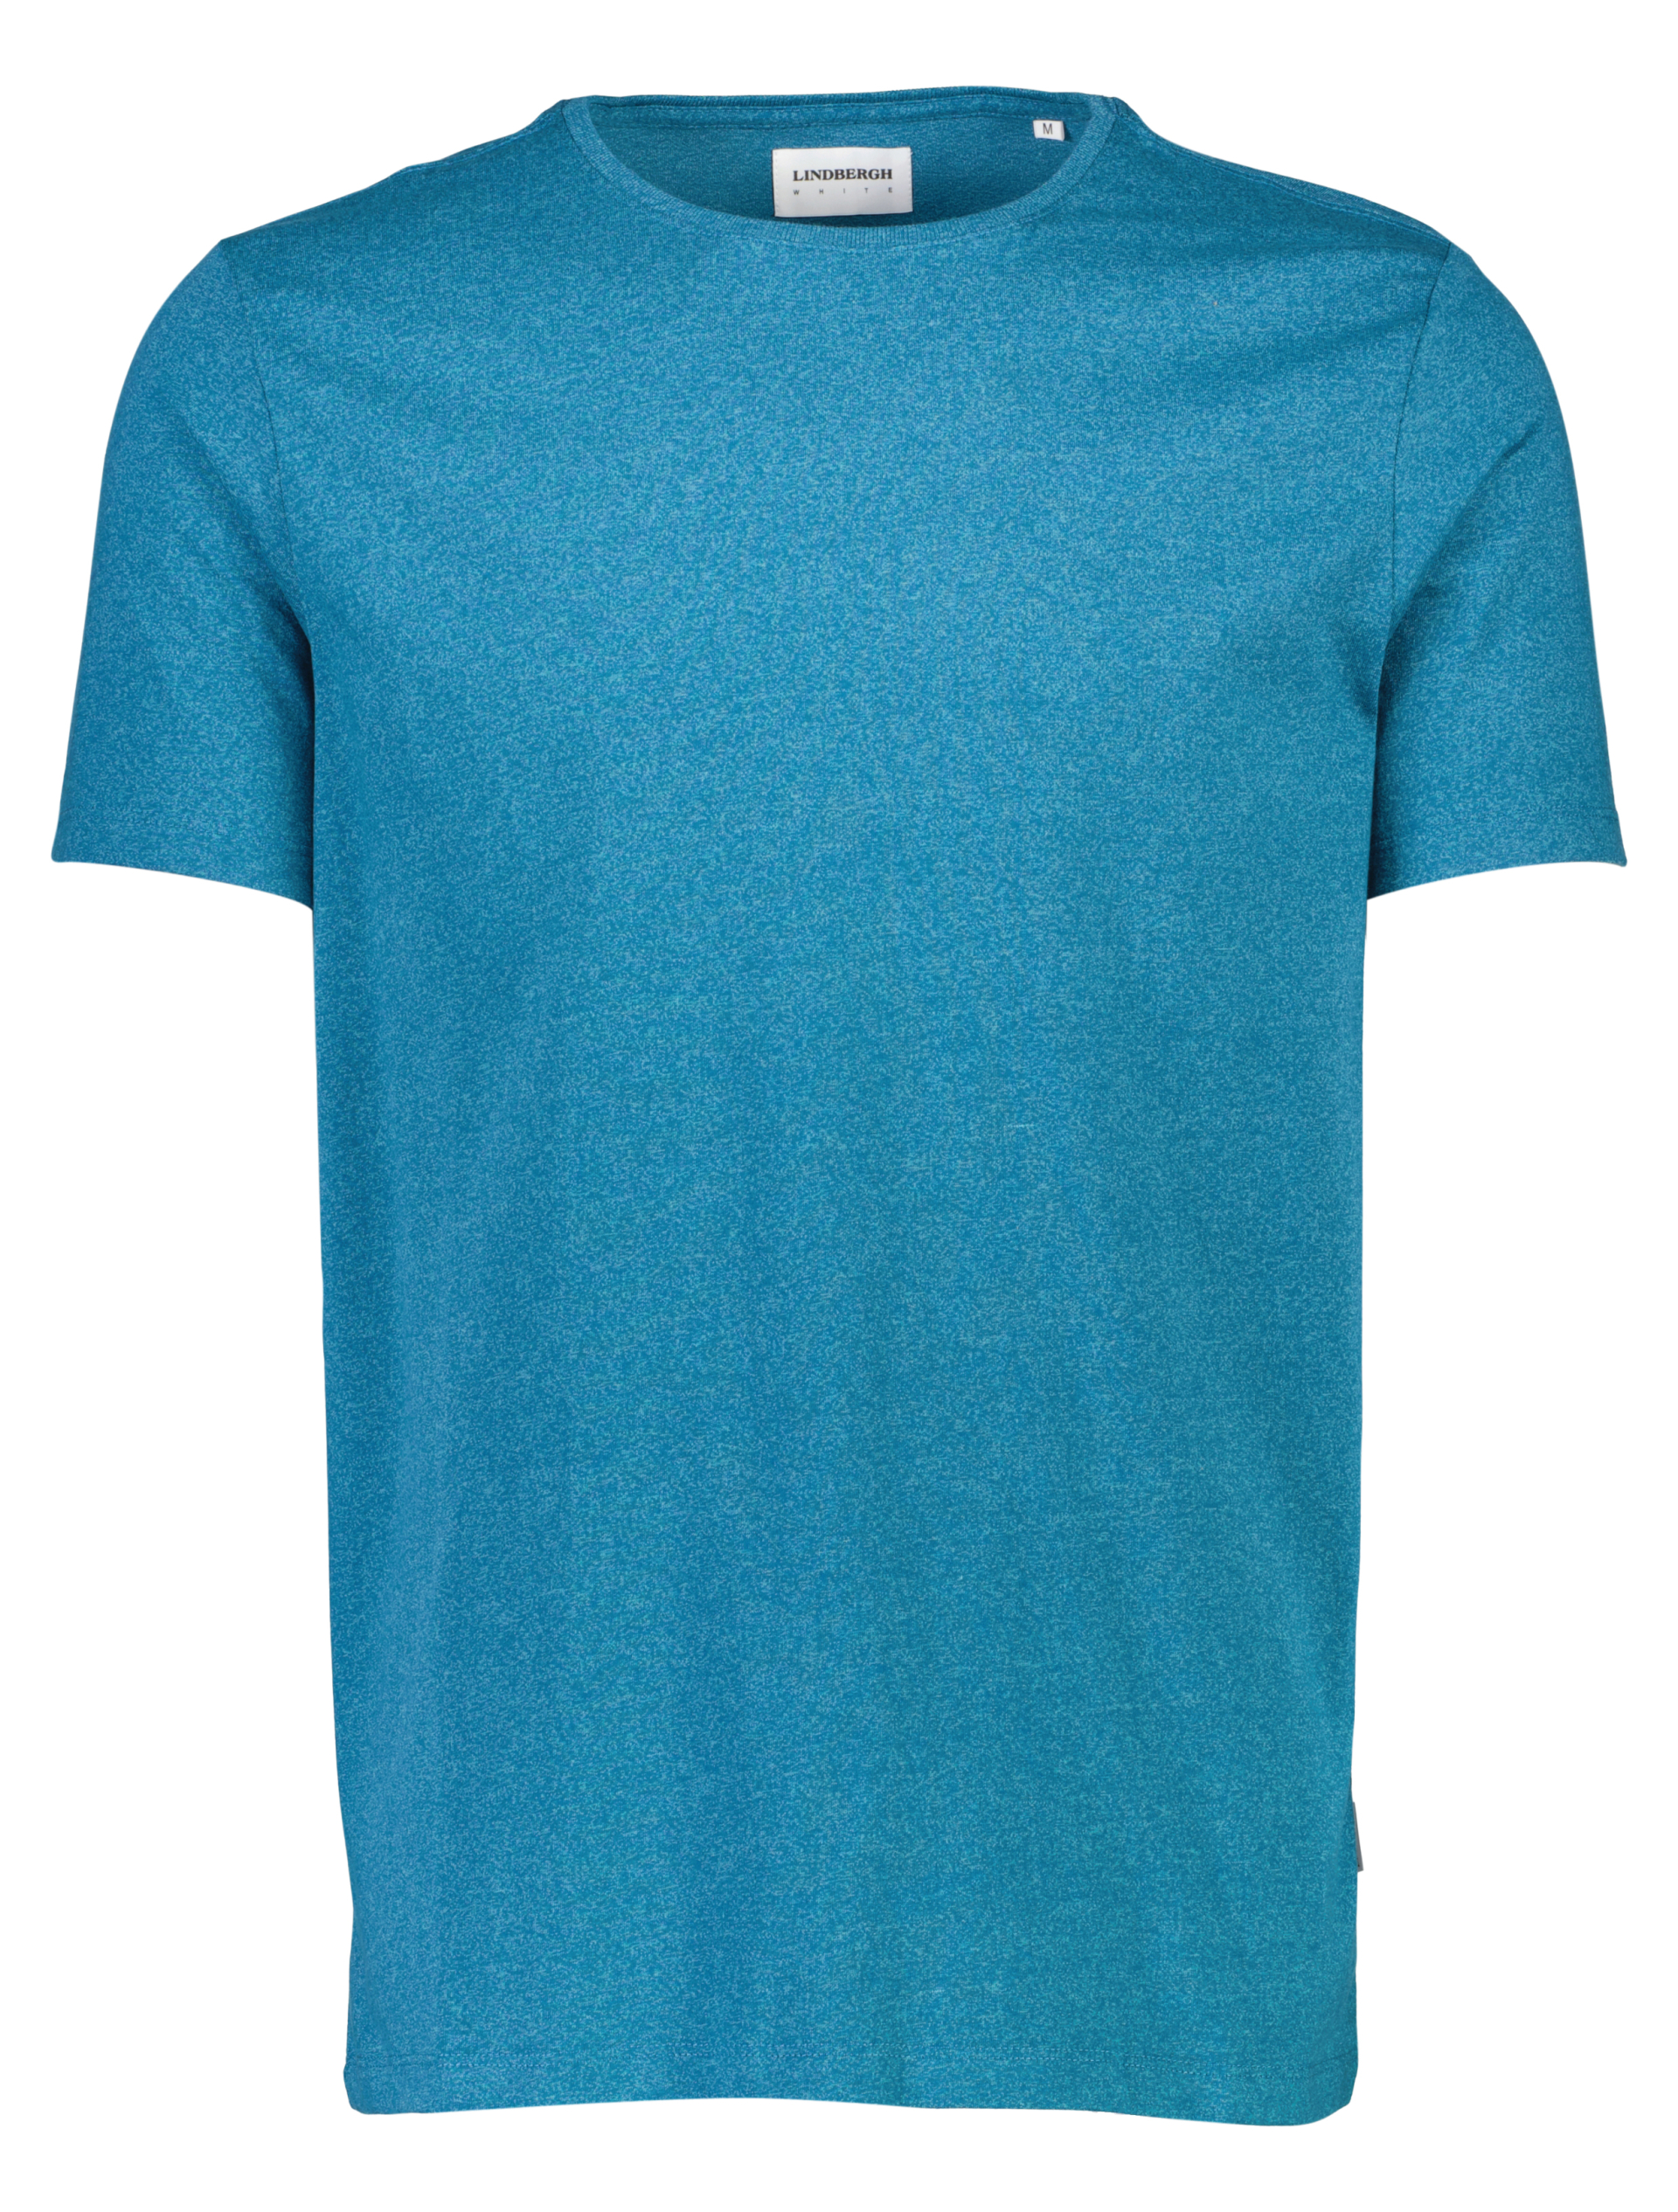 Lindbergh T-Shirt blau / aqua mix 323